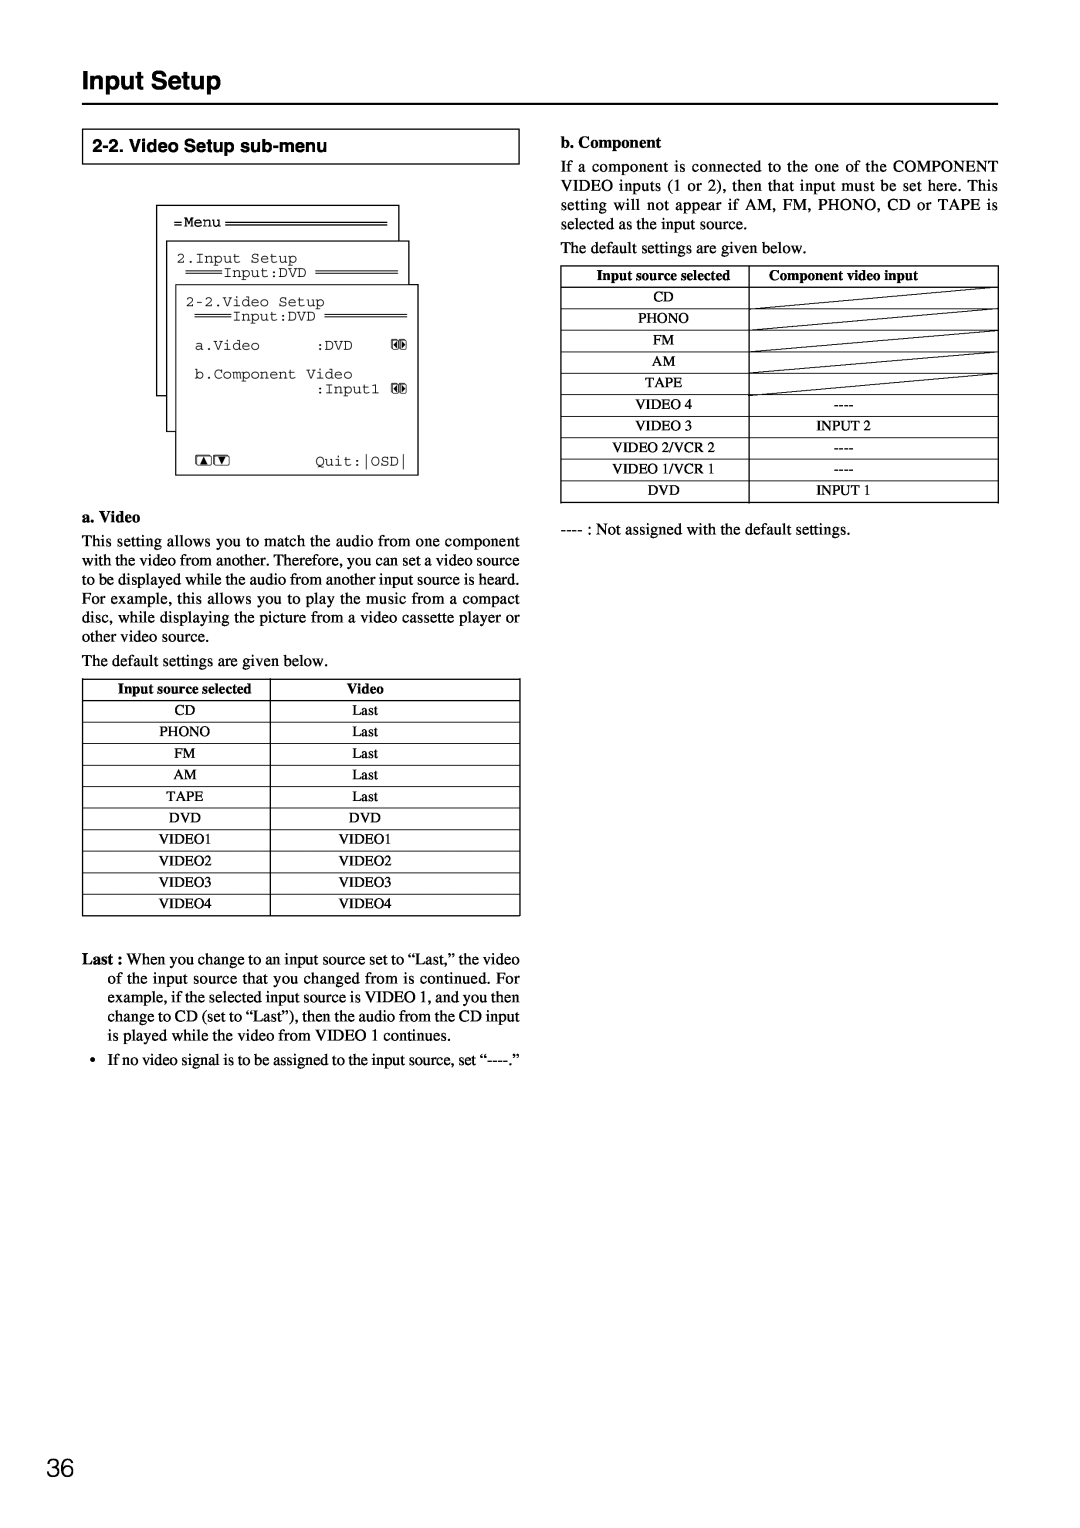 Integra DTR-7.1 appendix Input Setup, Video Setup sub-menu, a. Video, b. Component 